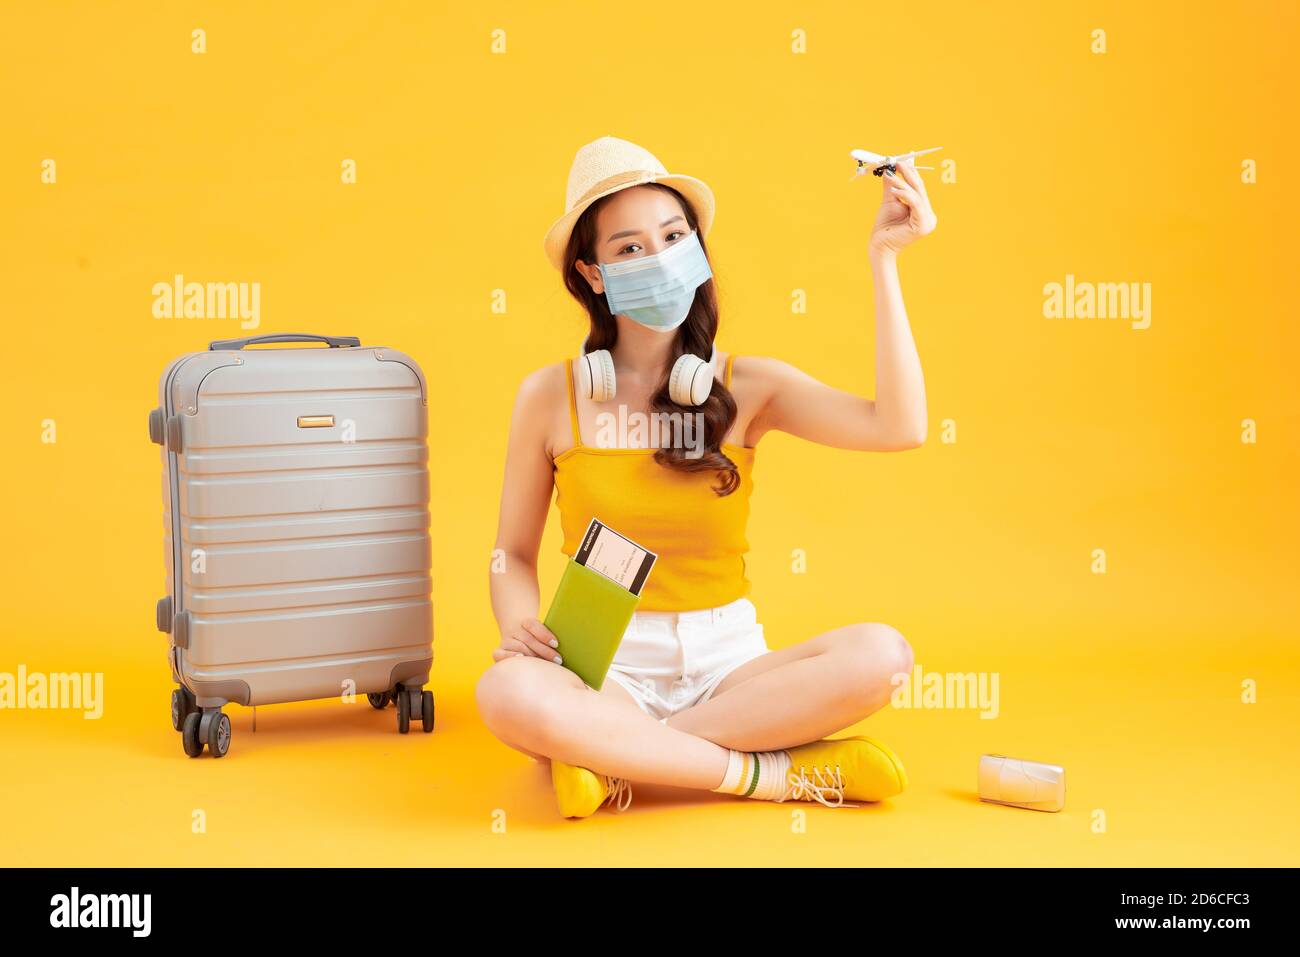 Junge asiatische weibliche Touristen tragen Maske der neuen normalen Lebensstil Tragen Sie einen Rucksack und Reisepass, um zu reisen, zu schützen Sich selbst von Virus Stockfoto